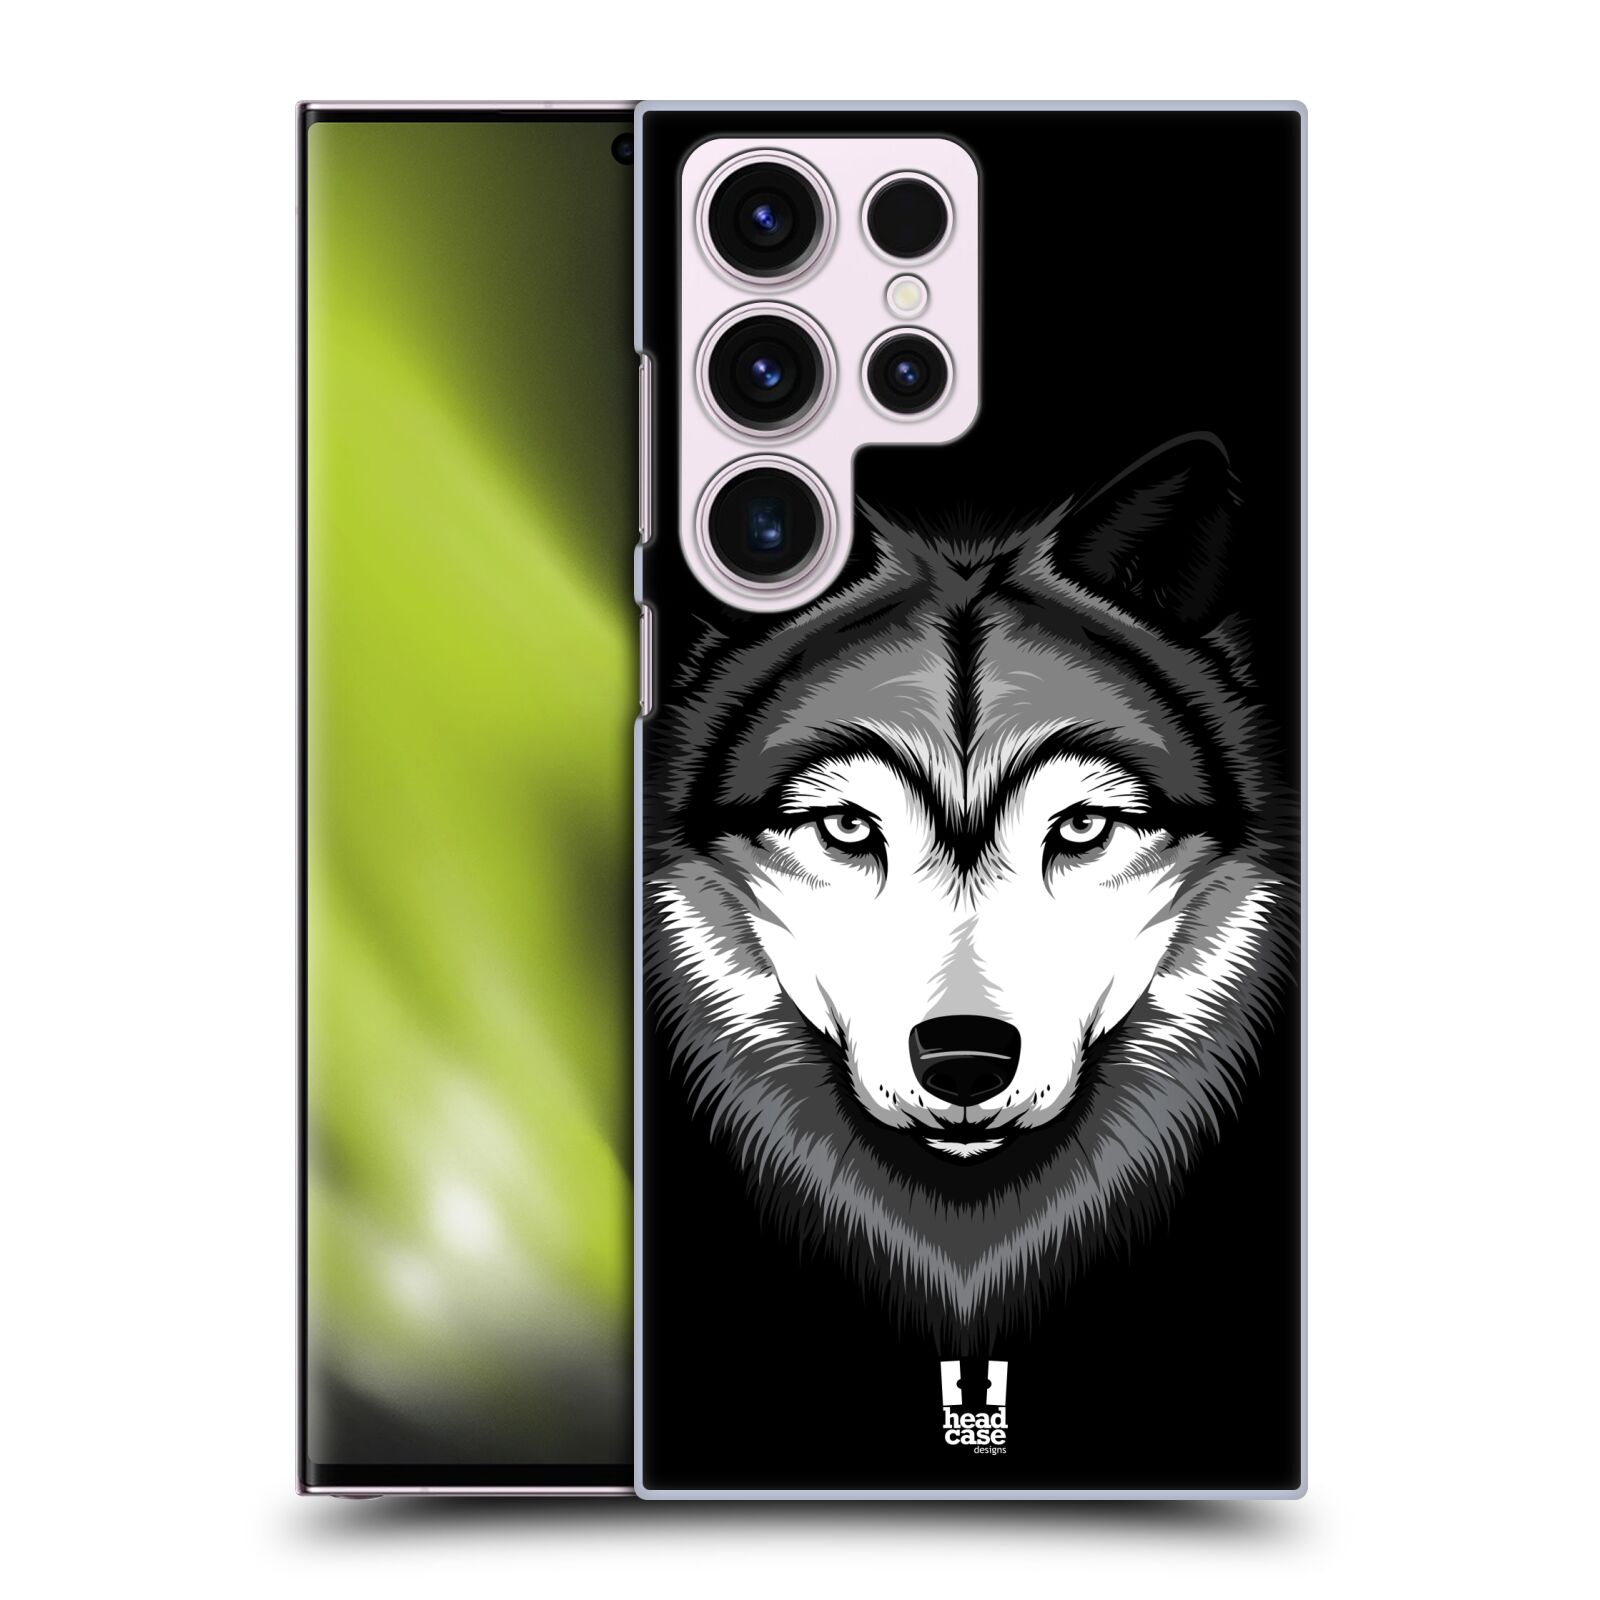 Plastový obal HEAD CASE na mobil Samsung Galaxy S23 ULTRA vzor Zvíře kreslená tvář 2 vlk